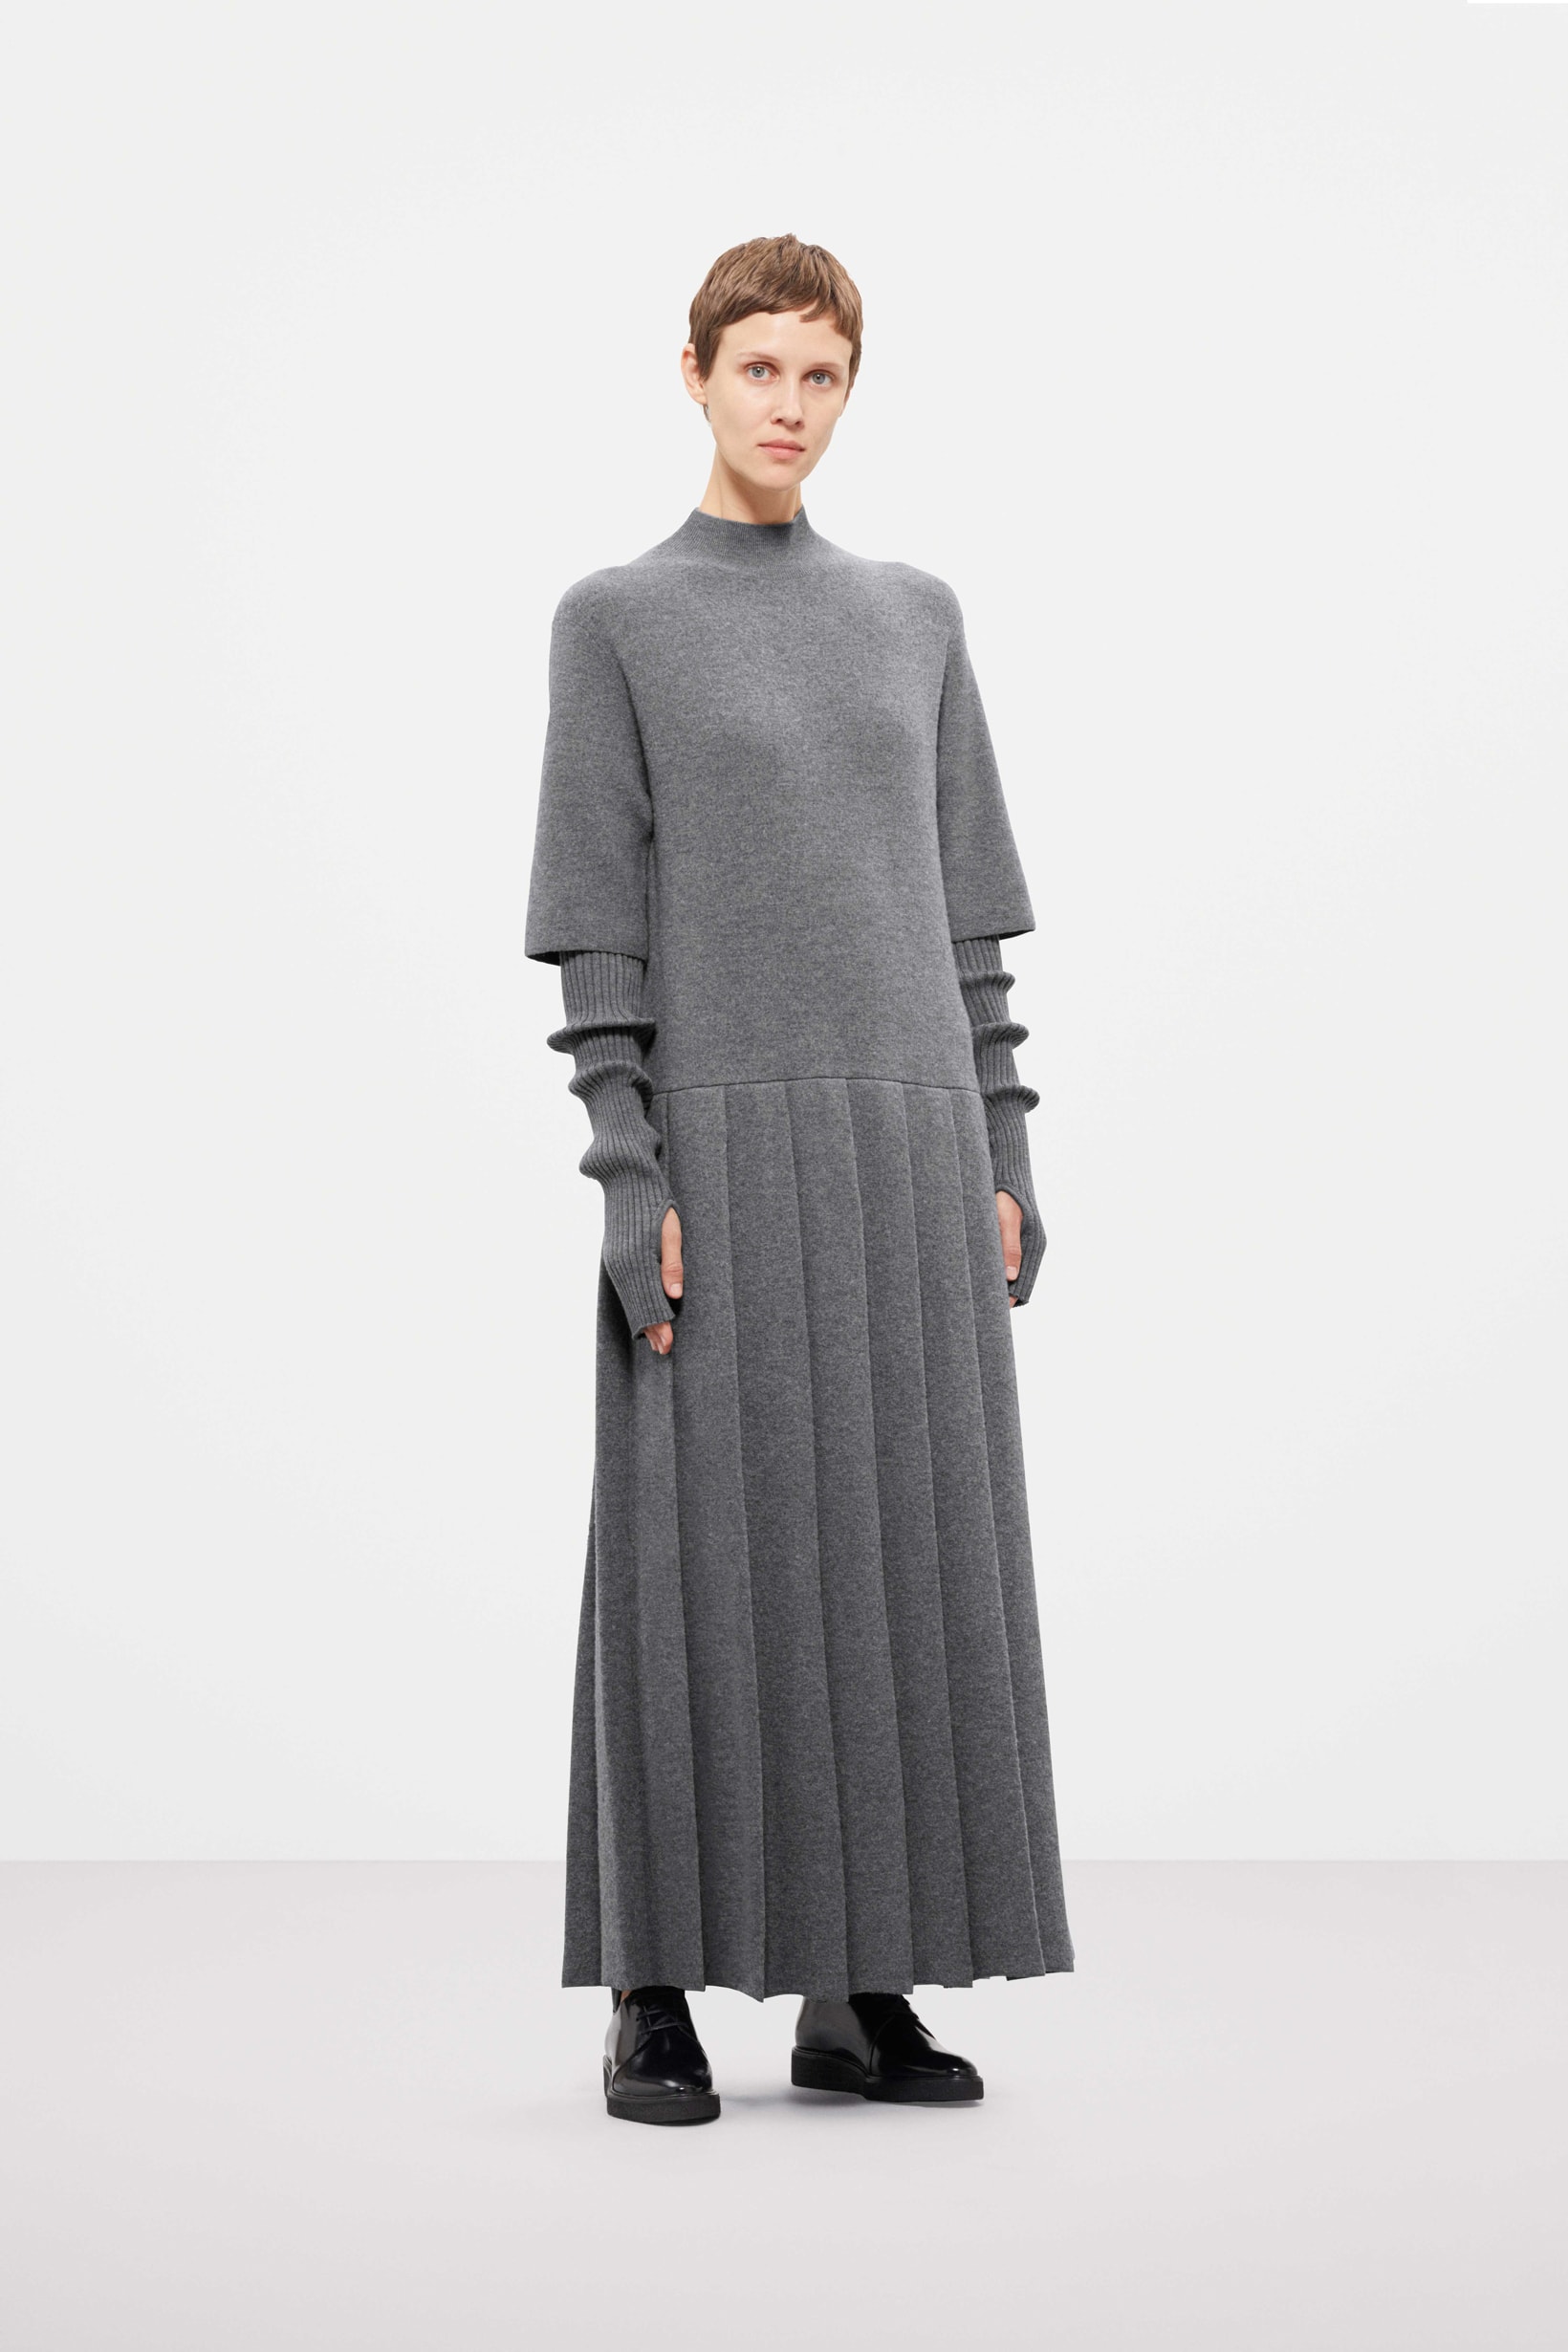 Cos Fall Winter 2019 Lookbook Dress Grey